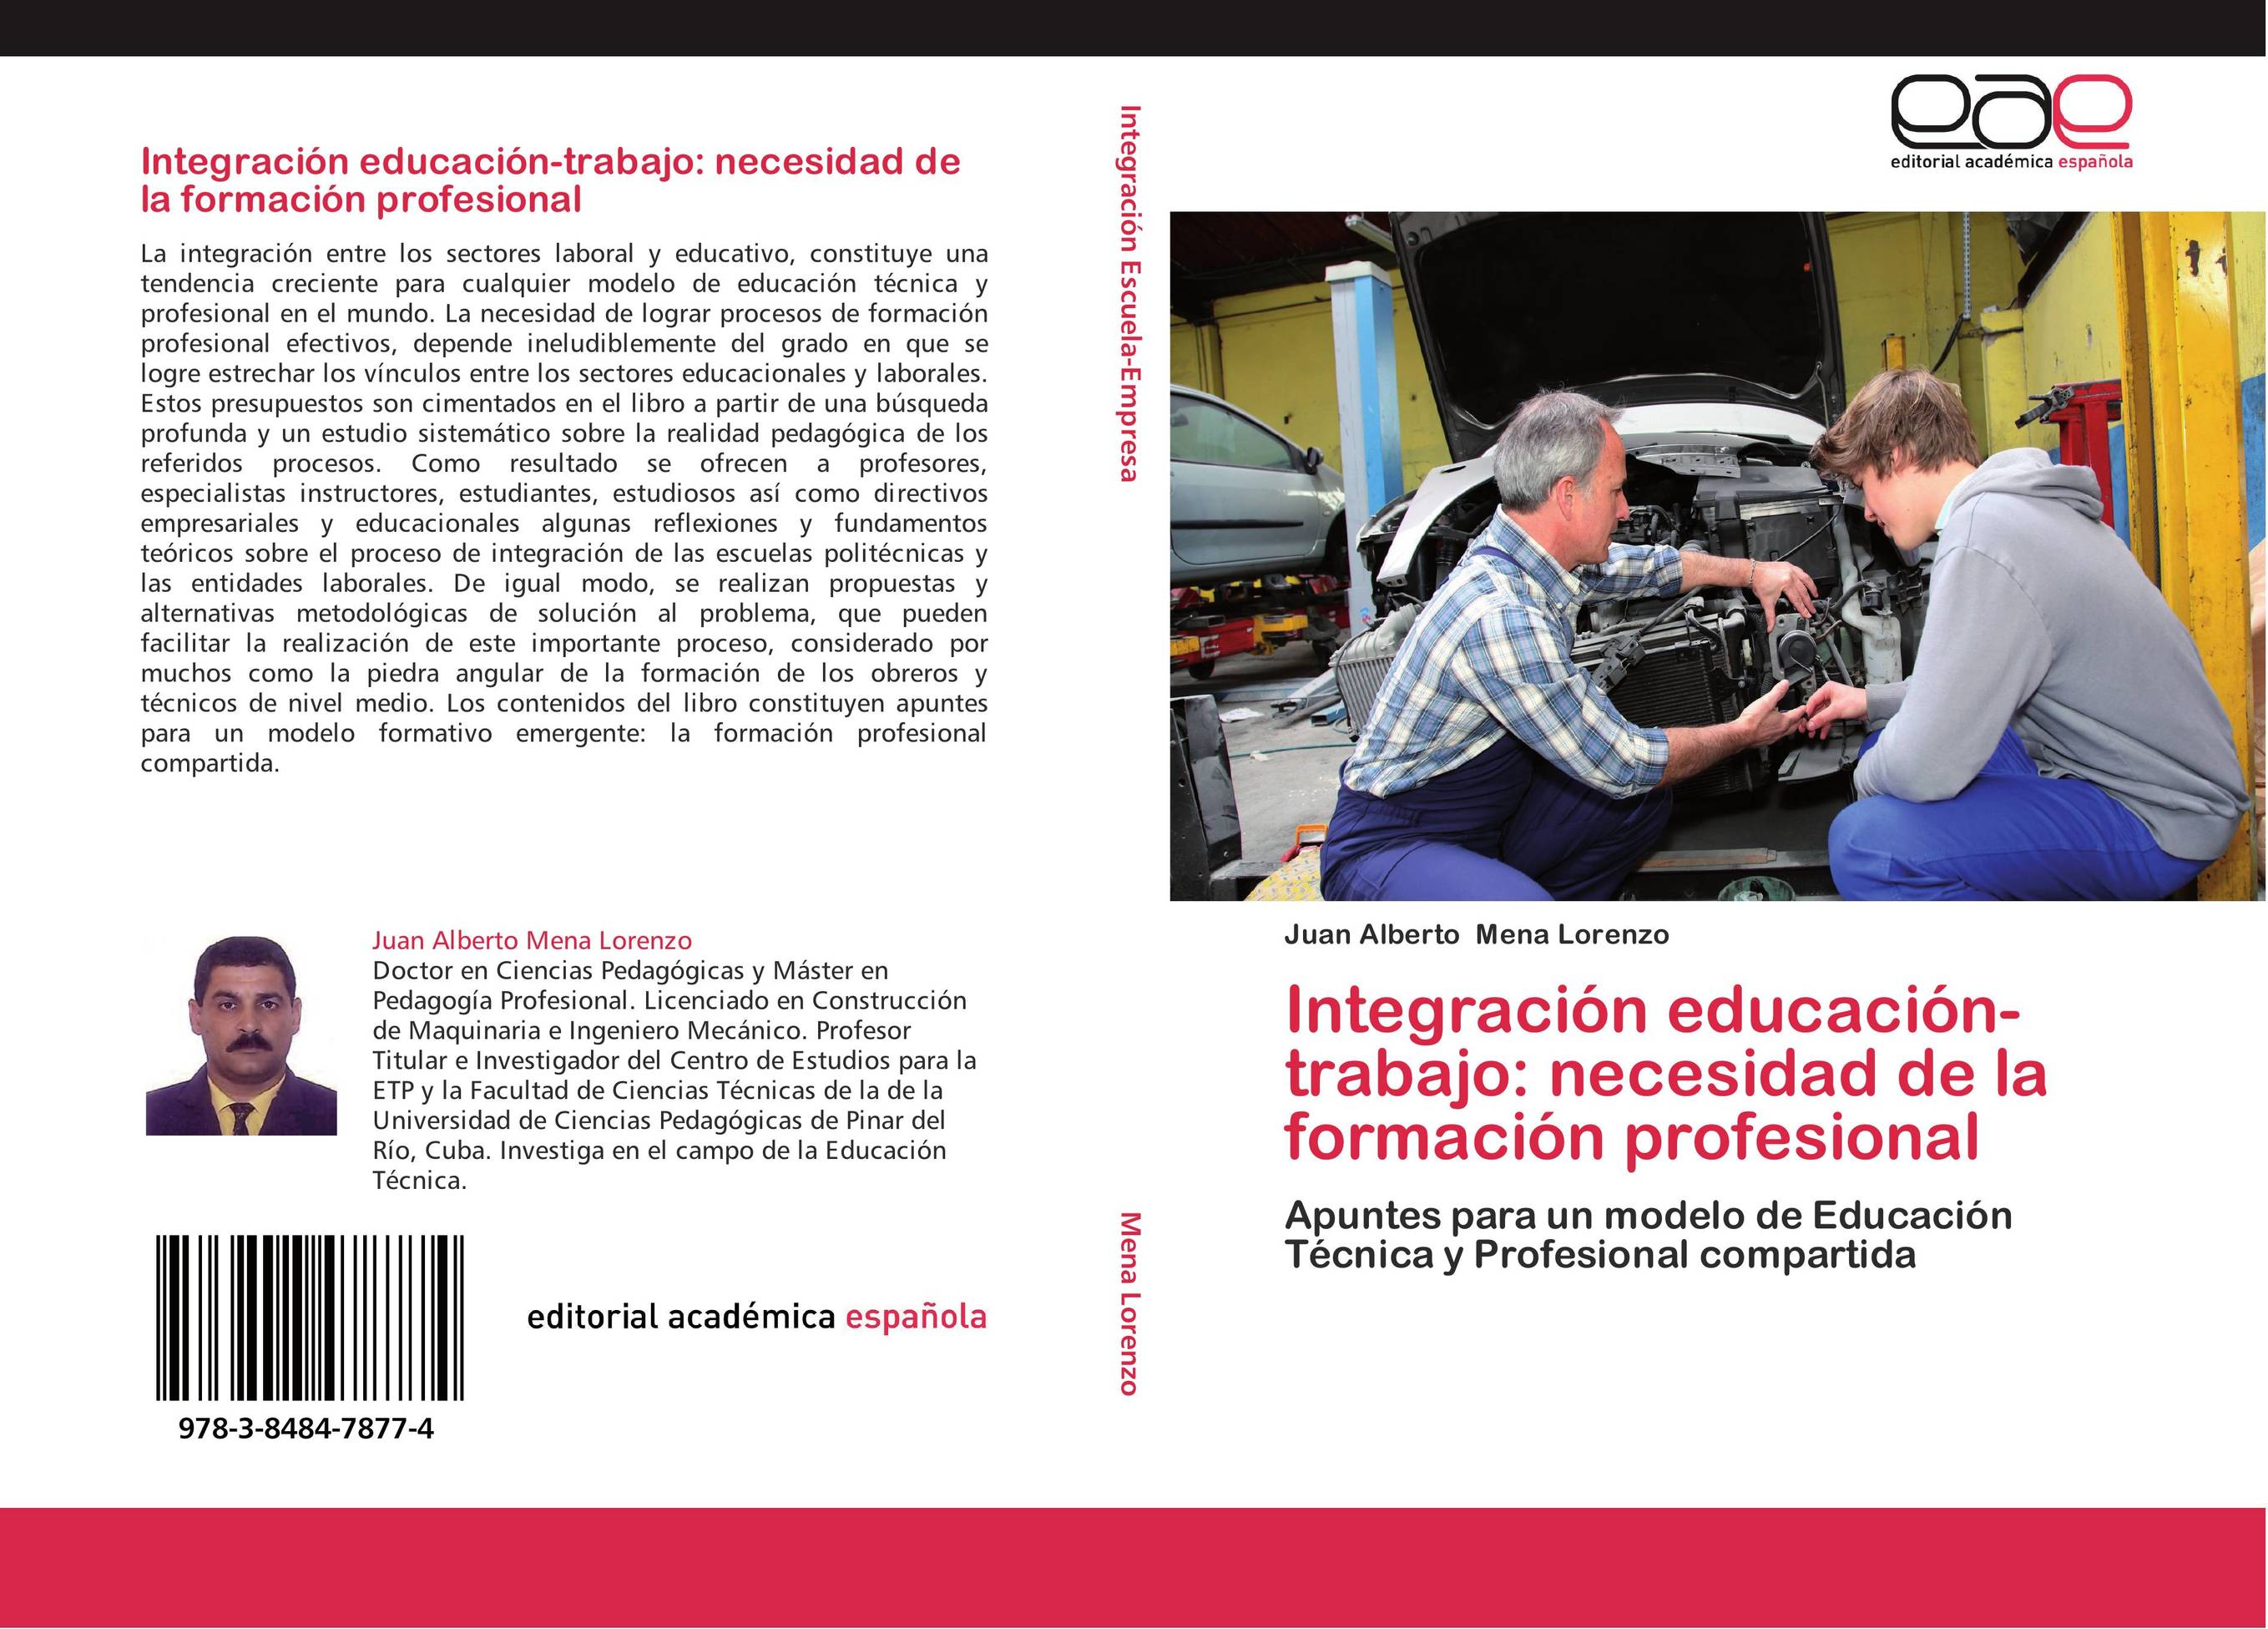 Integración educación-trabajo: necesidad de la formación profesional